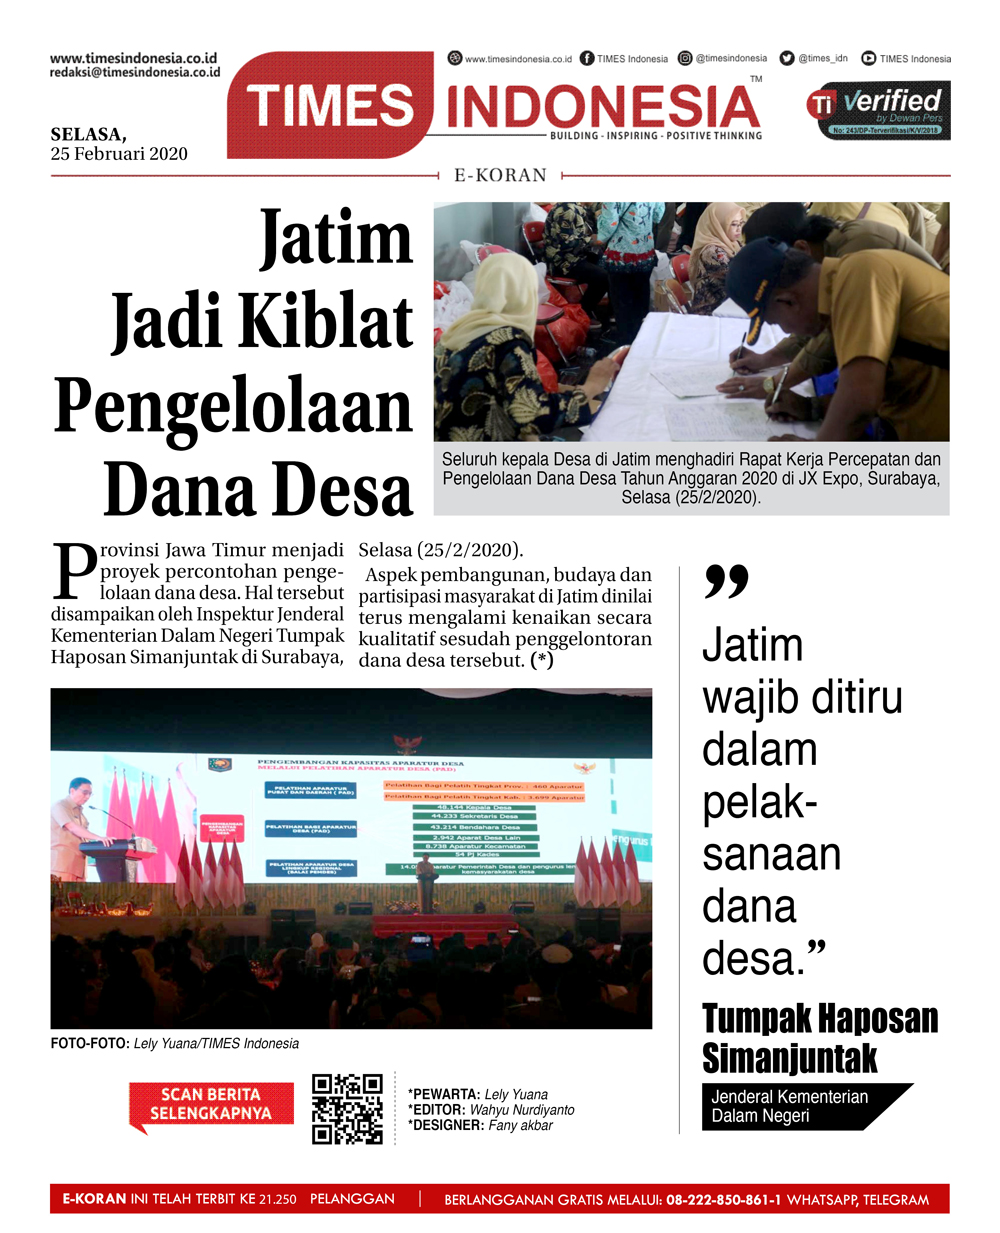 Jawa Timur Jadi Proyek Percontohan Pengelolaan Dana Desa Times Indonesia